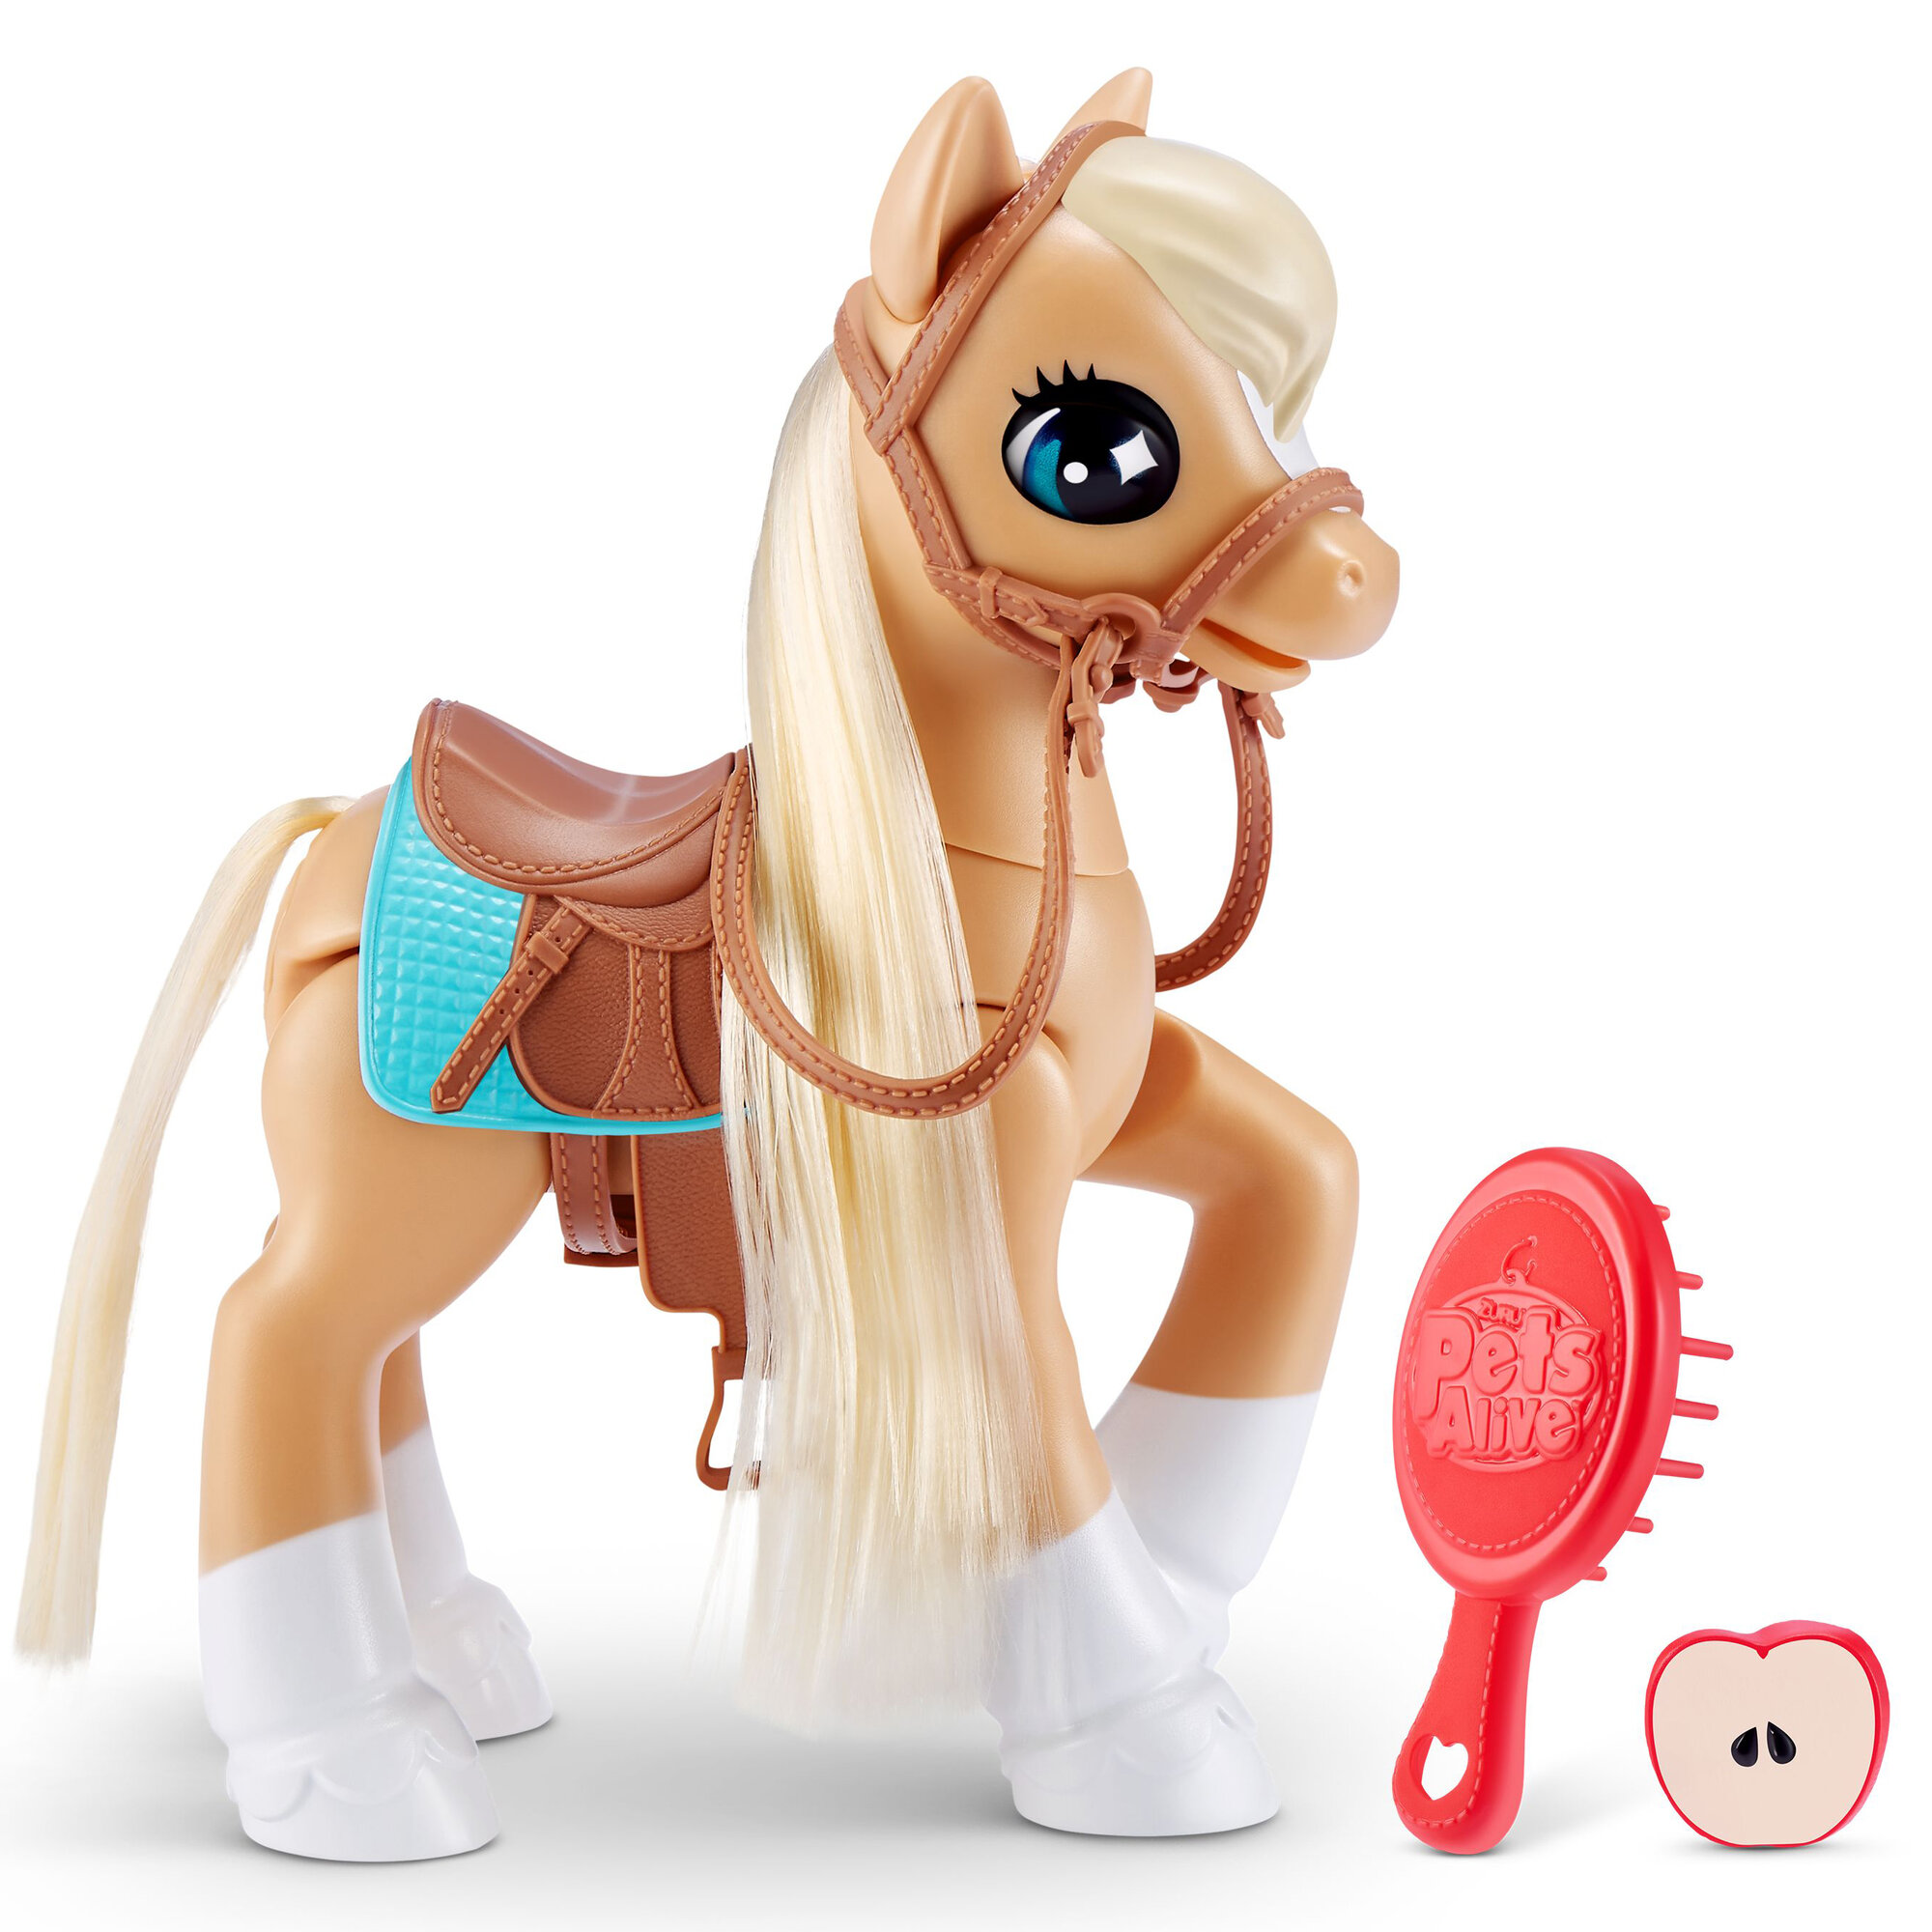 Игрушка ZURU PETS ALIVE My Magical Pony, Волшебный пони, игрушки для девочек, 9546